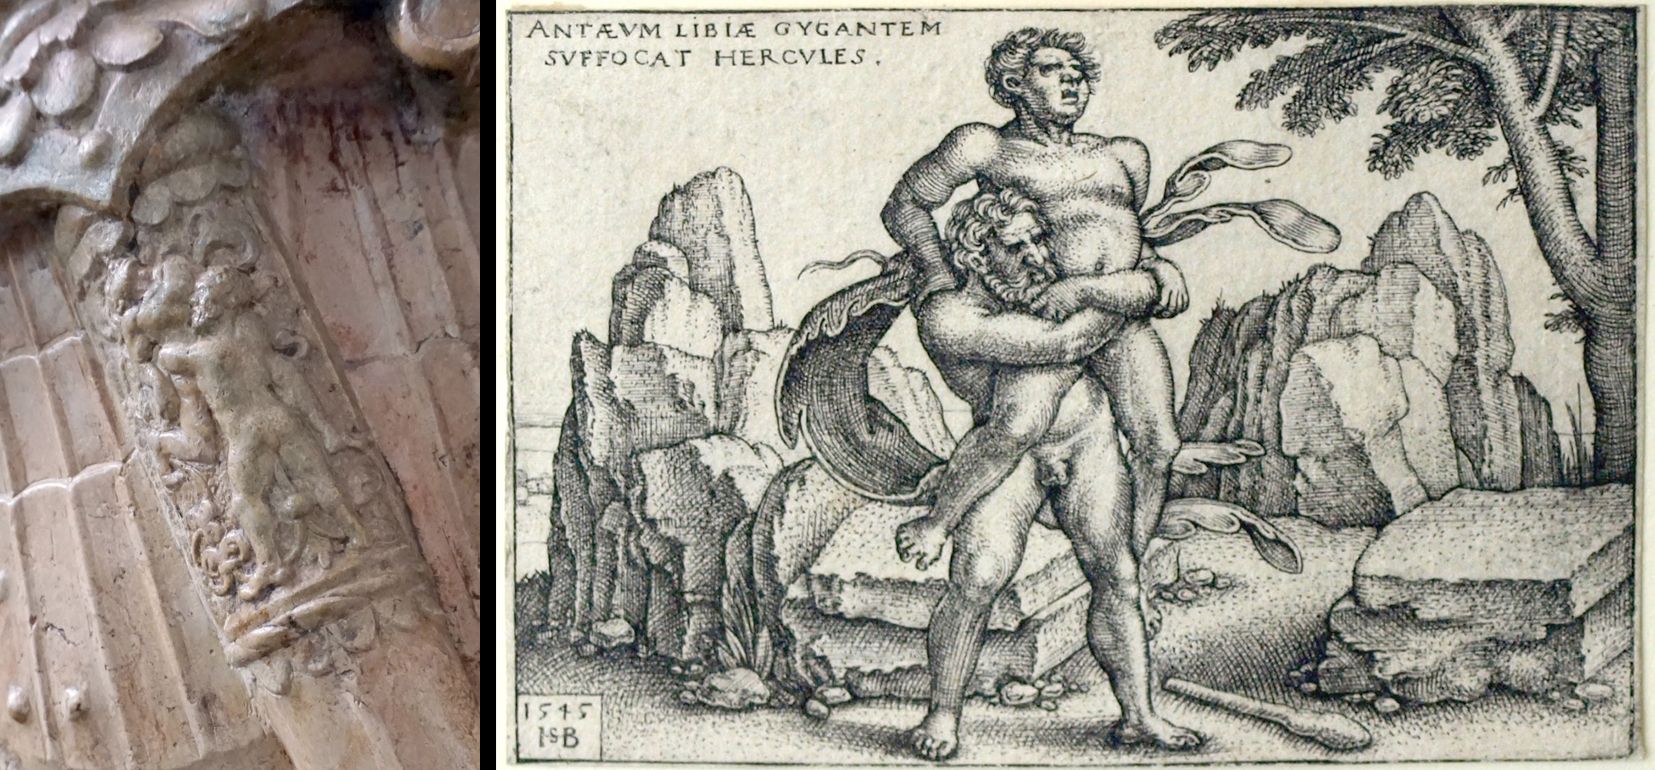 Grabplatte des Bartholomäus Haller von Hallerstein Bildvergleich mit "Hercules erwürgt den Riesen Antaeus von Libyen" (1545) aus "Die Taten den Hercules" von Sebald Beham